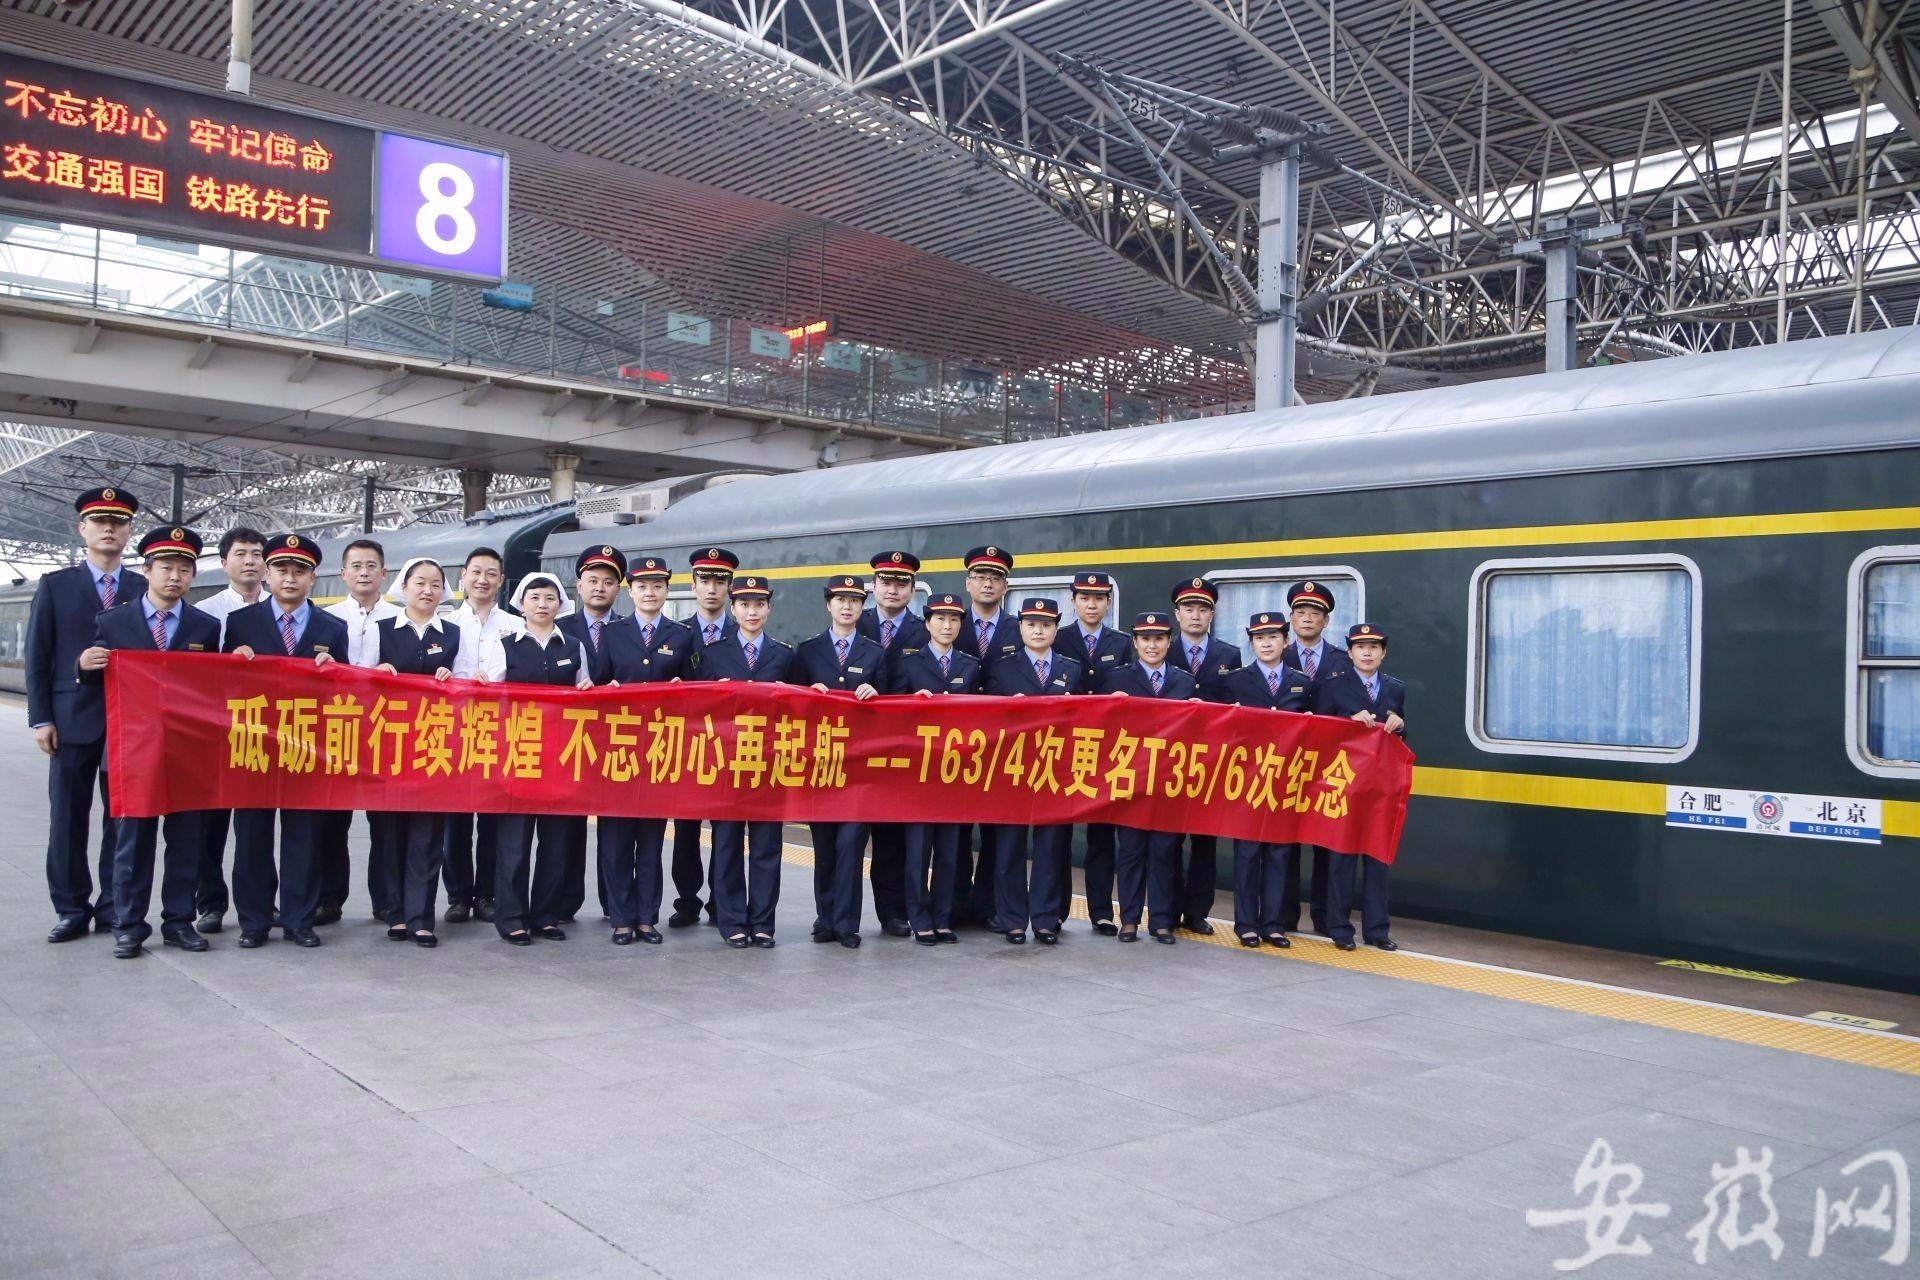 10月10日18时15分,由合肥开往北京的t64次列车缓缓驶离合肥站,开始了